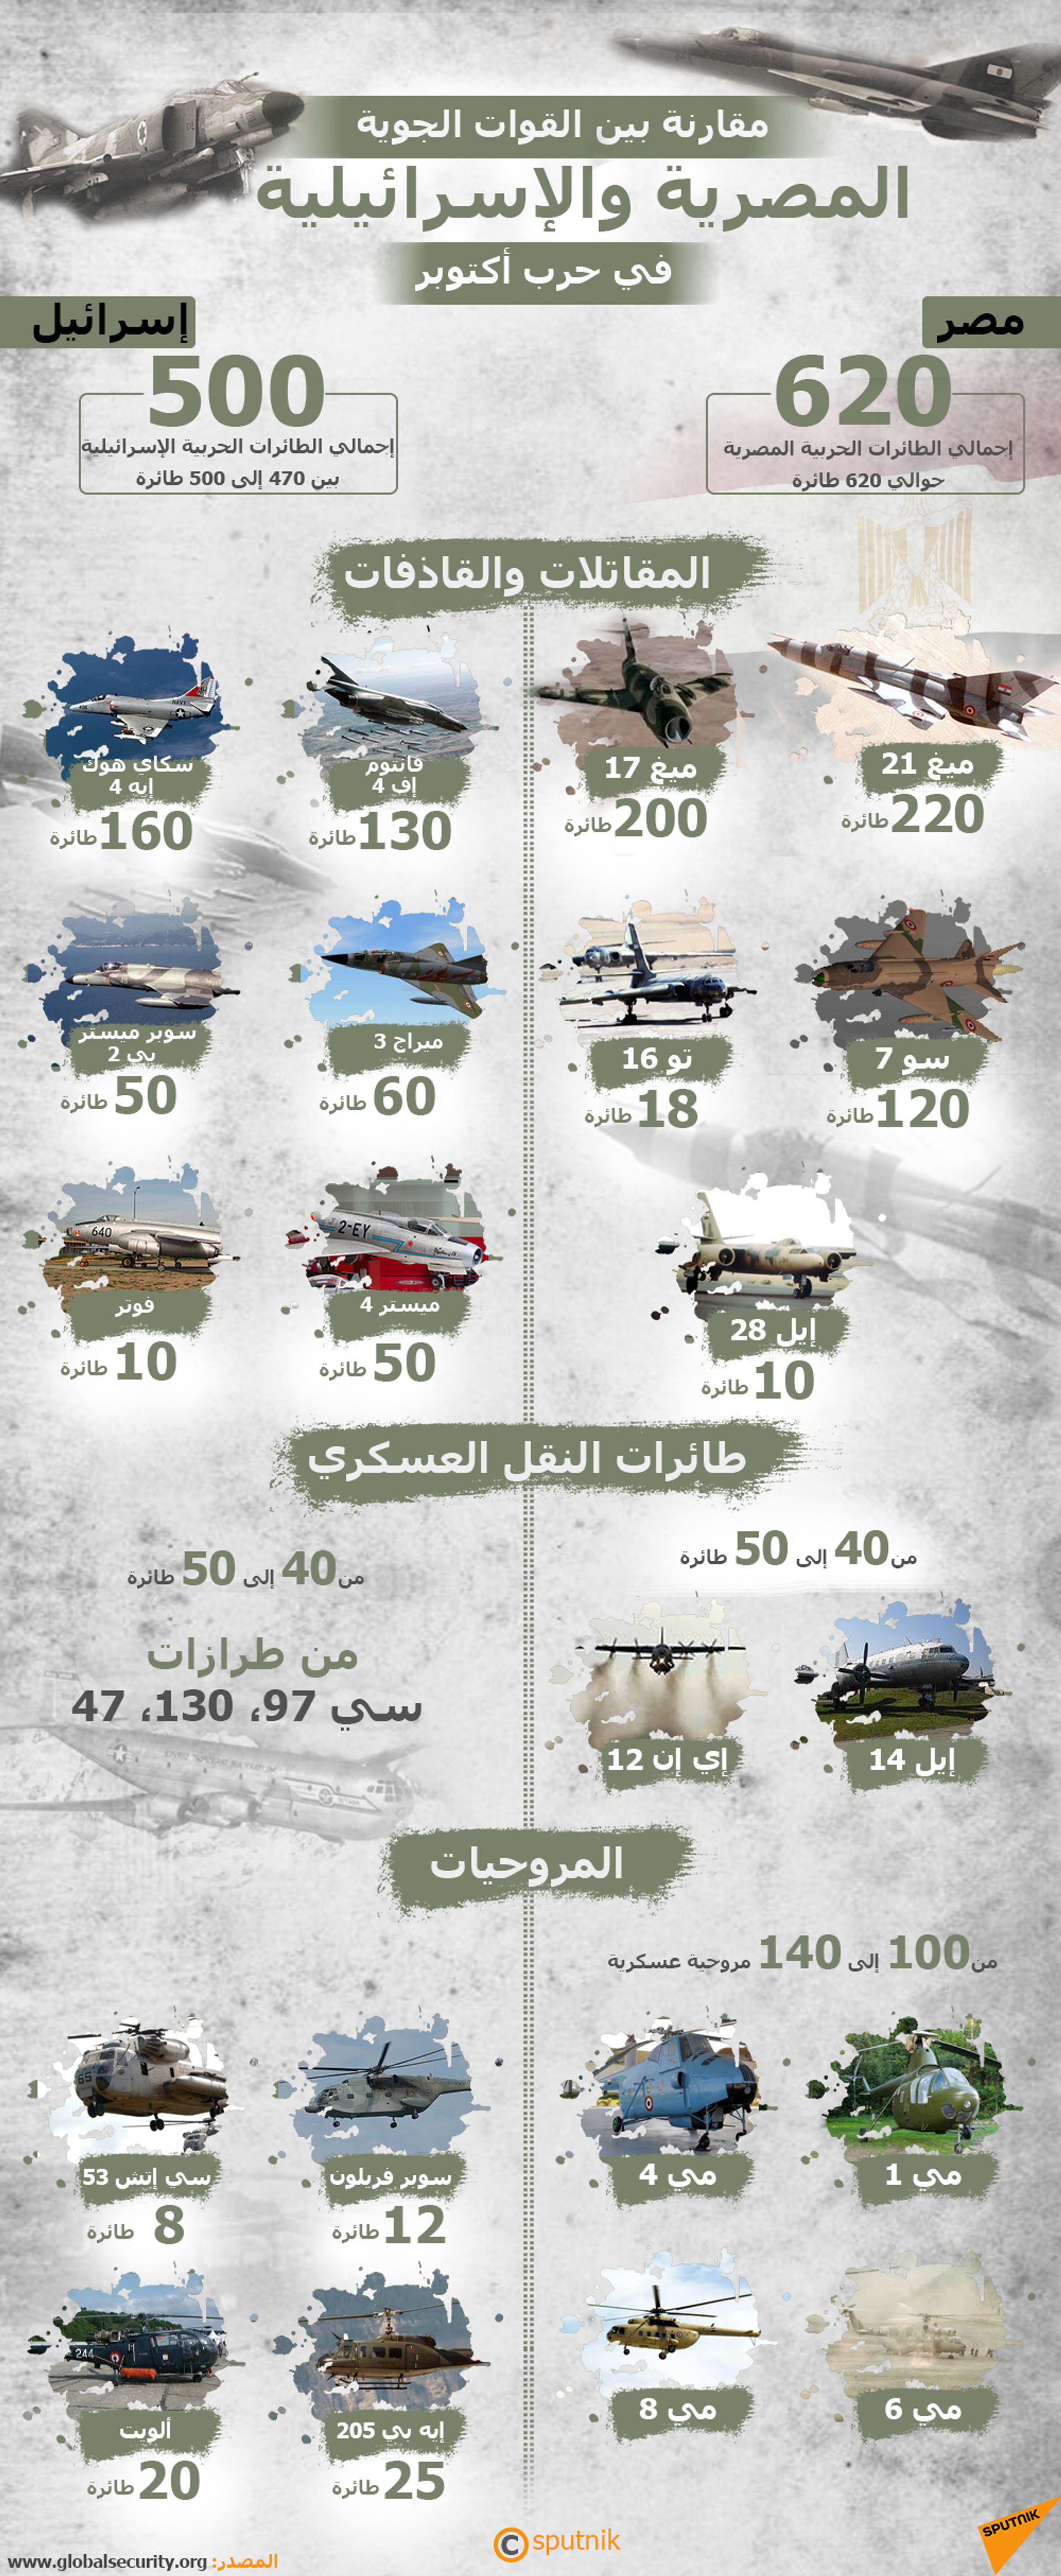 مقارنة بين القوات الجوية المصرية والإسرائيلية في حرب أكتوبر - سبوتنيك عربي, 1920, 23.11.2021